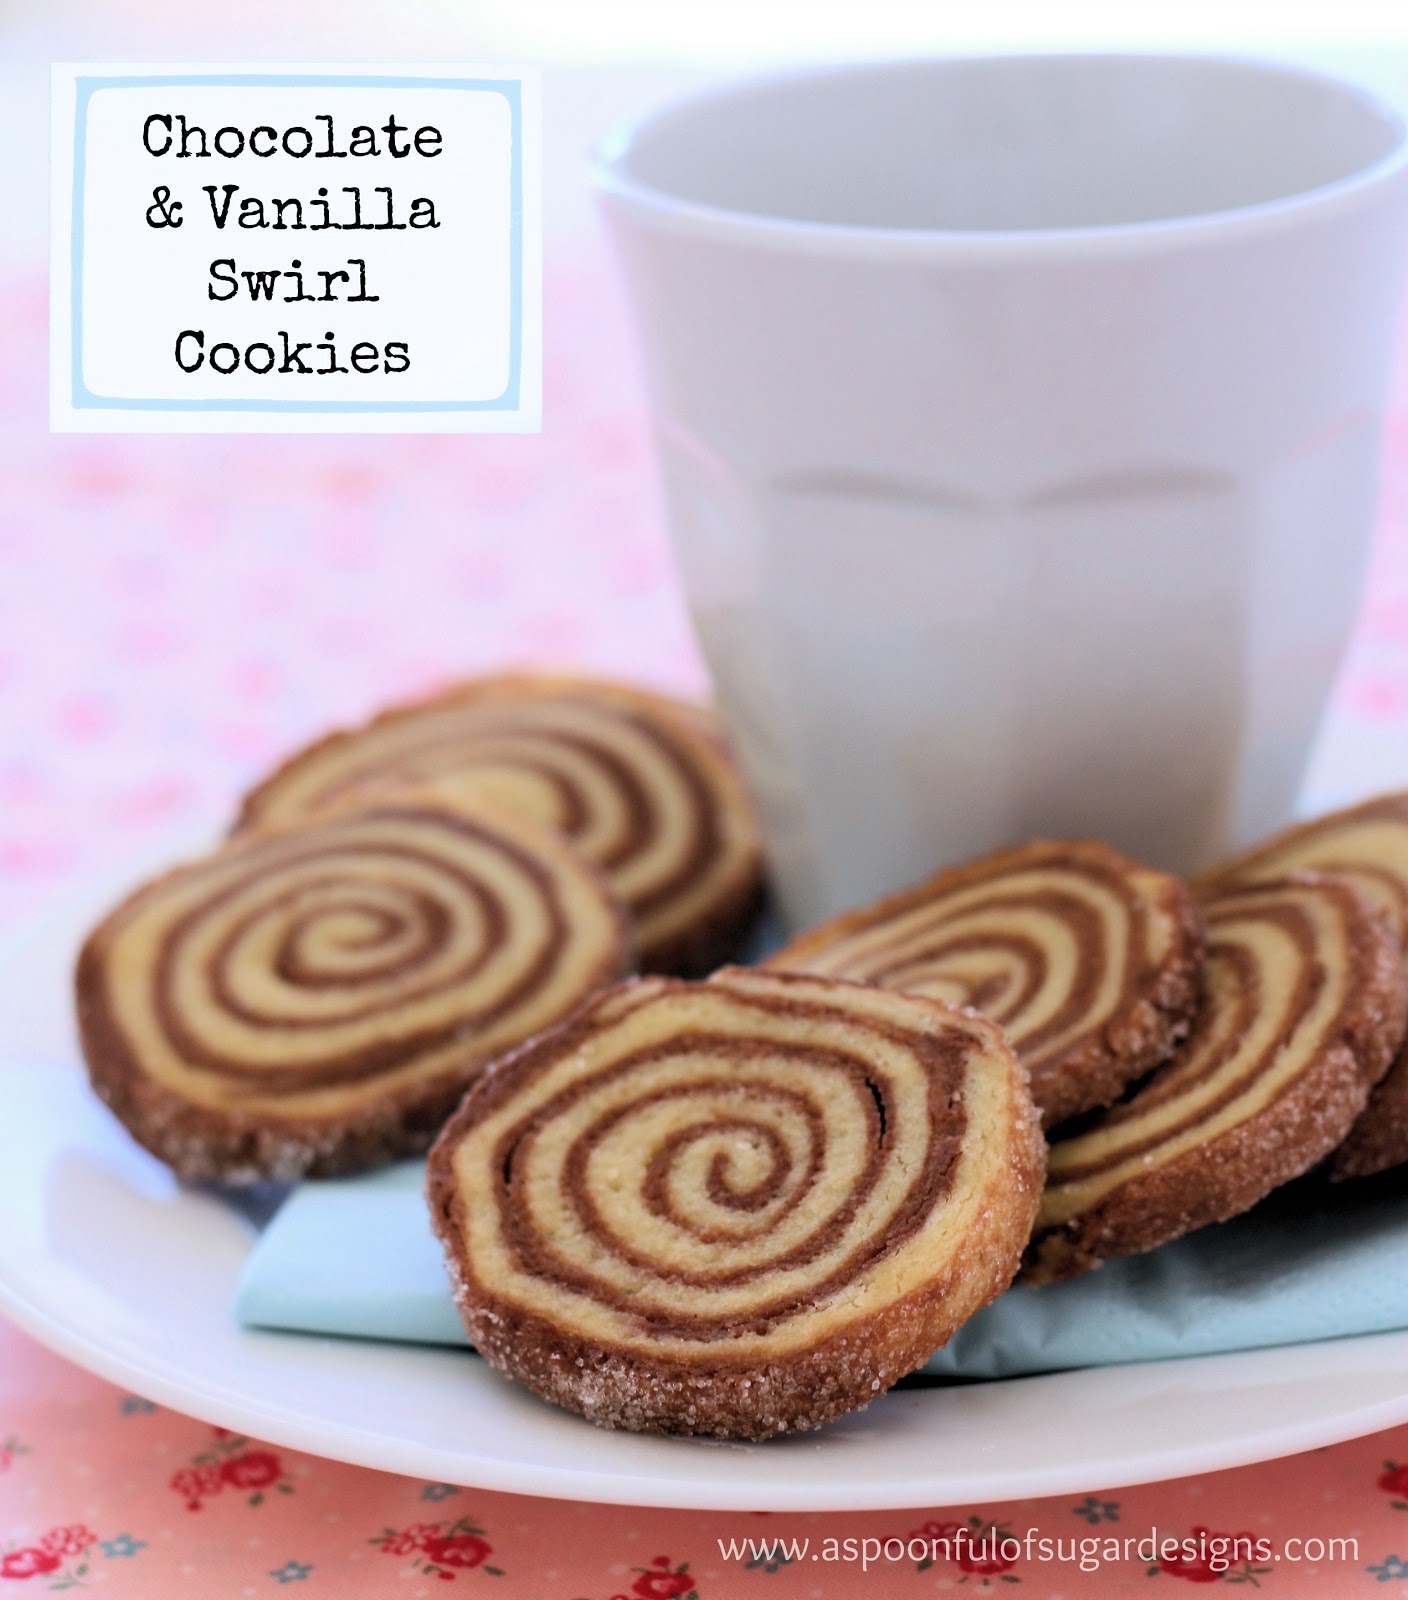 Chocolate and Vanilla Swirl Cookies.